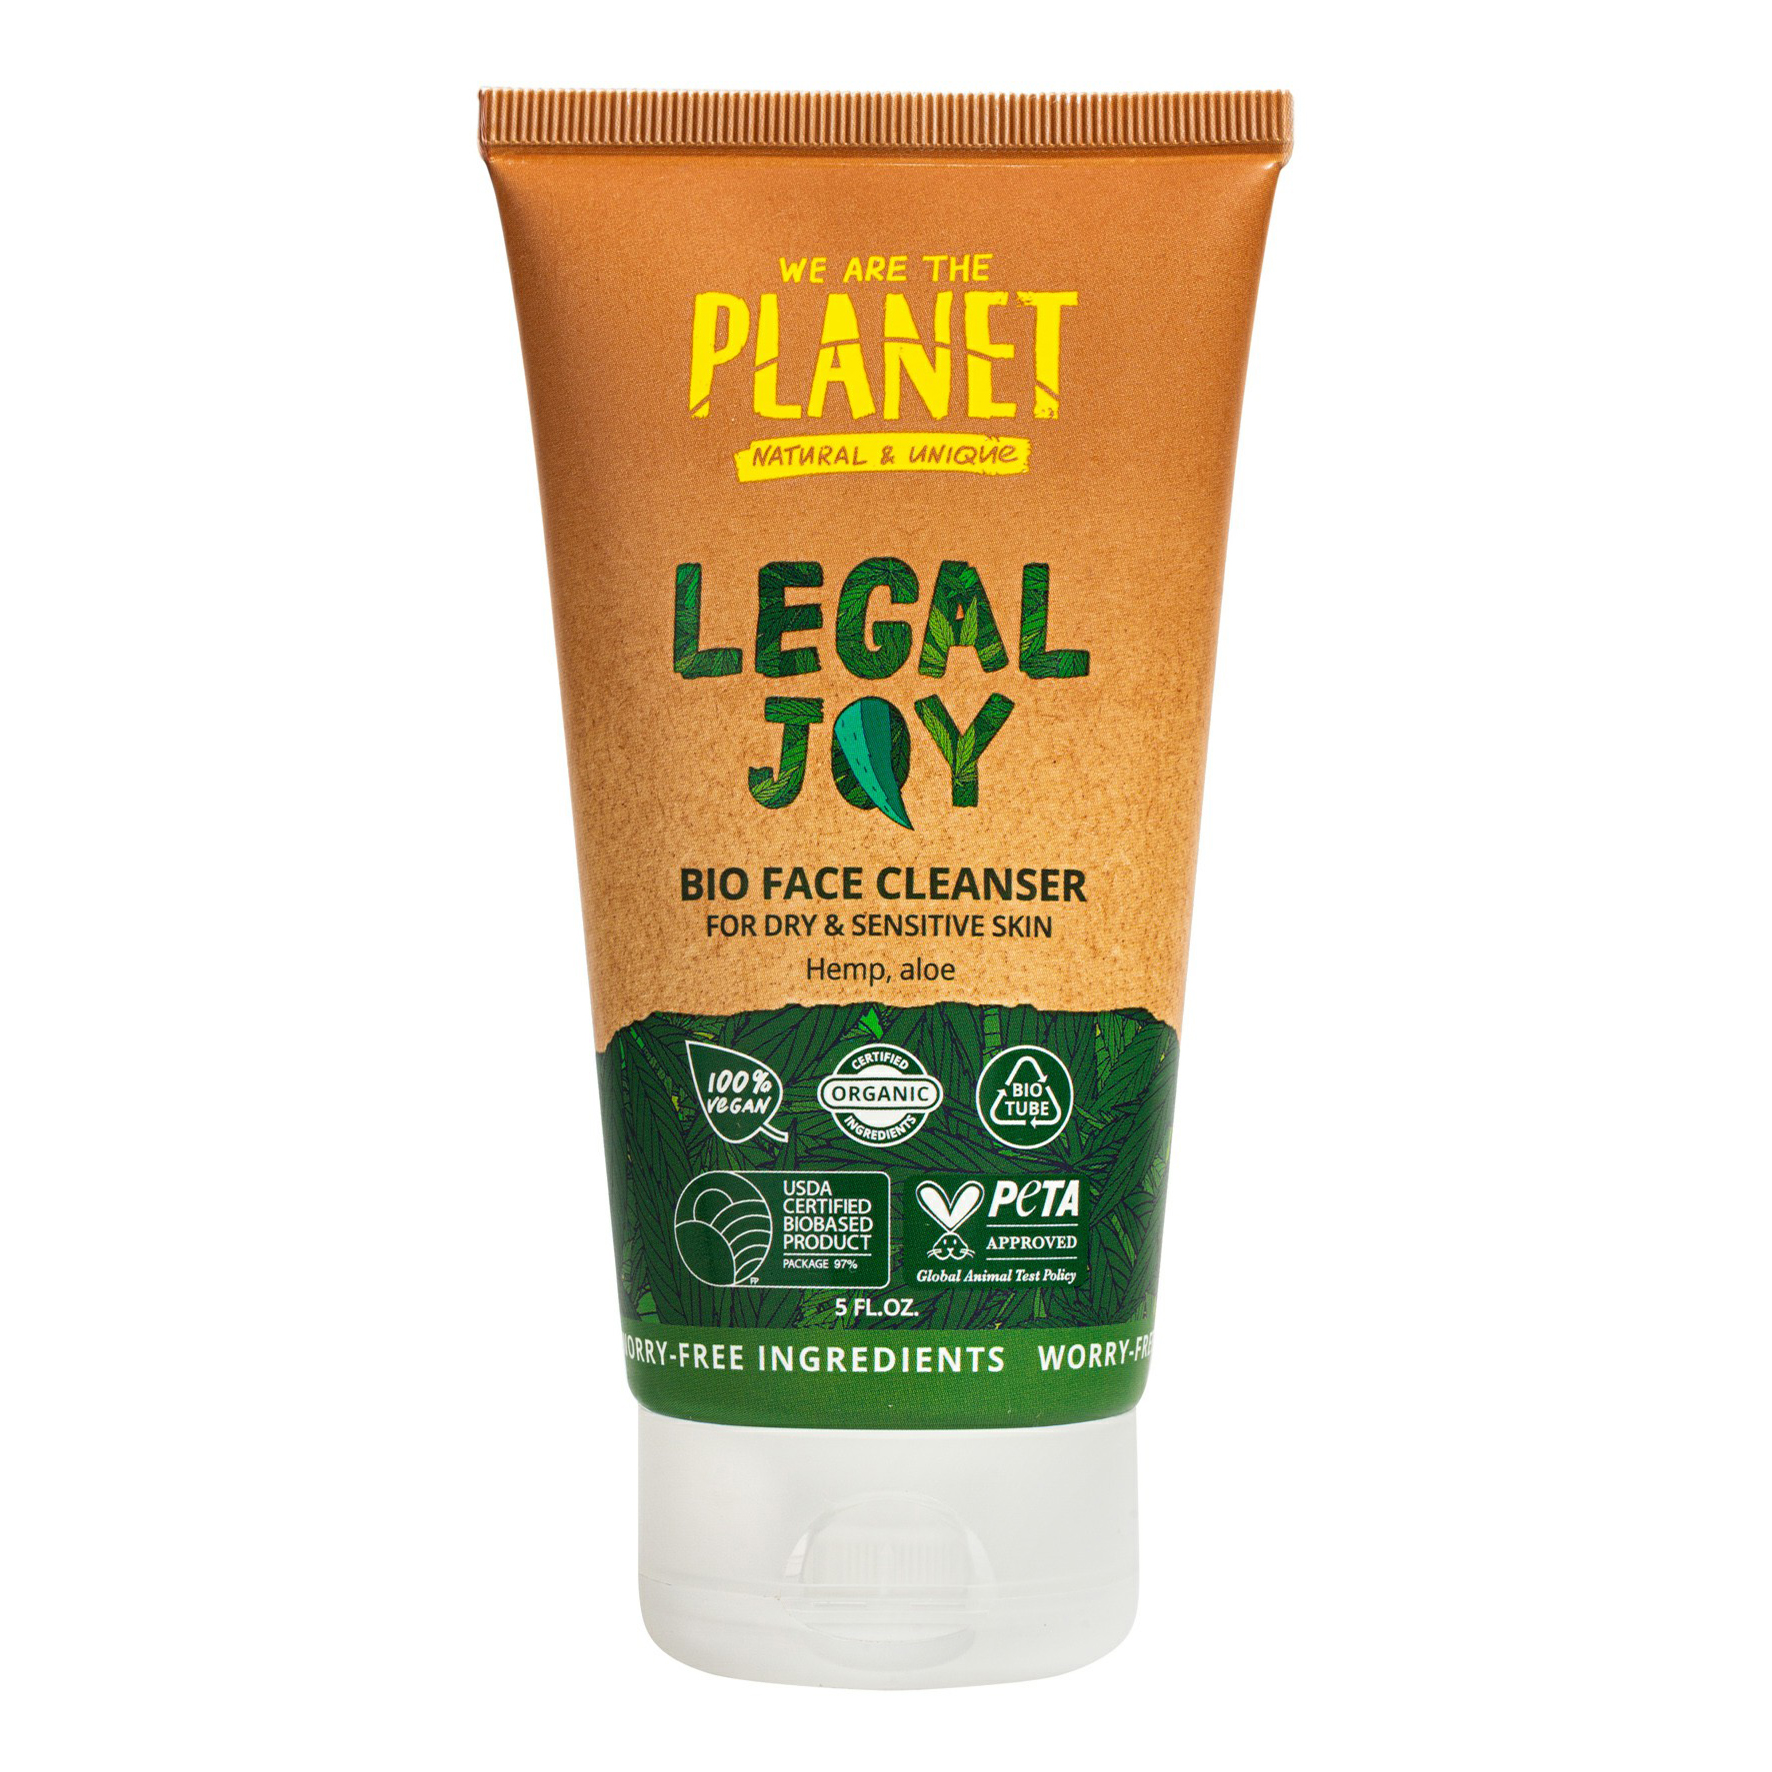 Гель для умывания We are the planet Legal Joy для сухой и чувствительной кожи 150 мл  - Купить